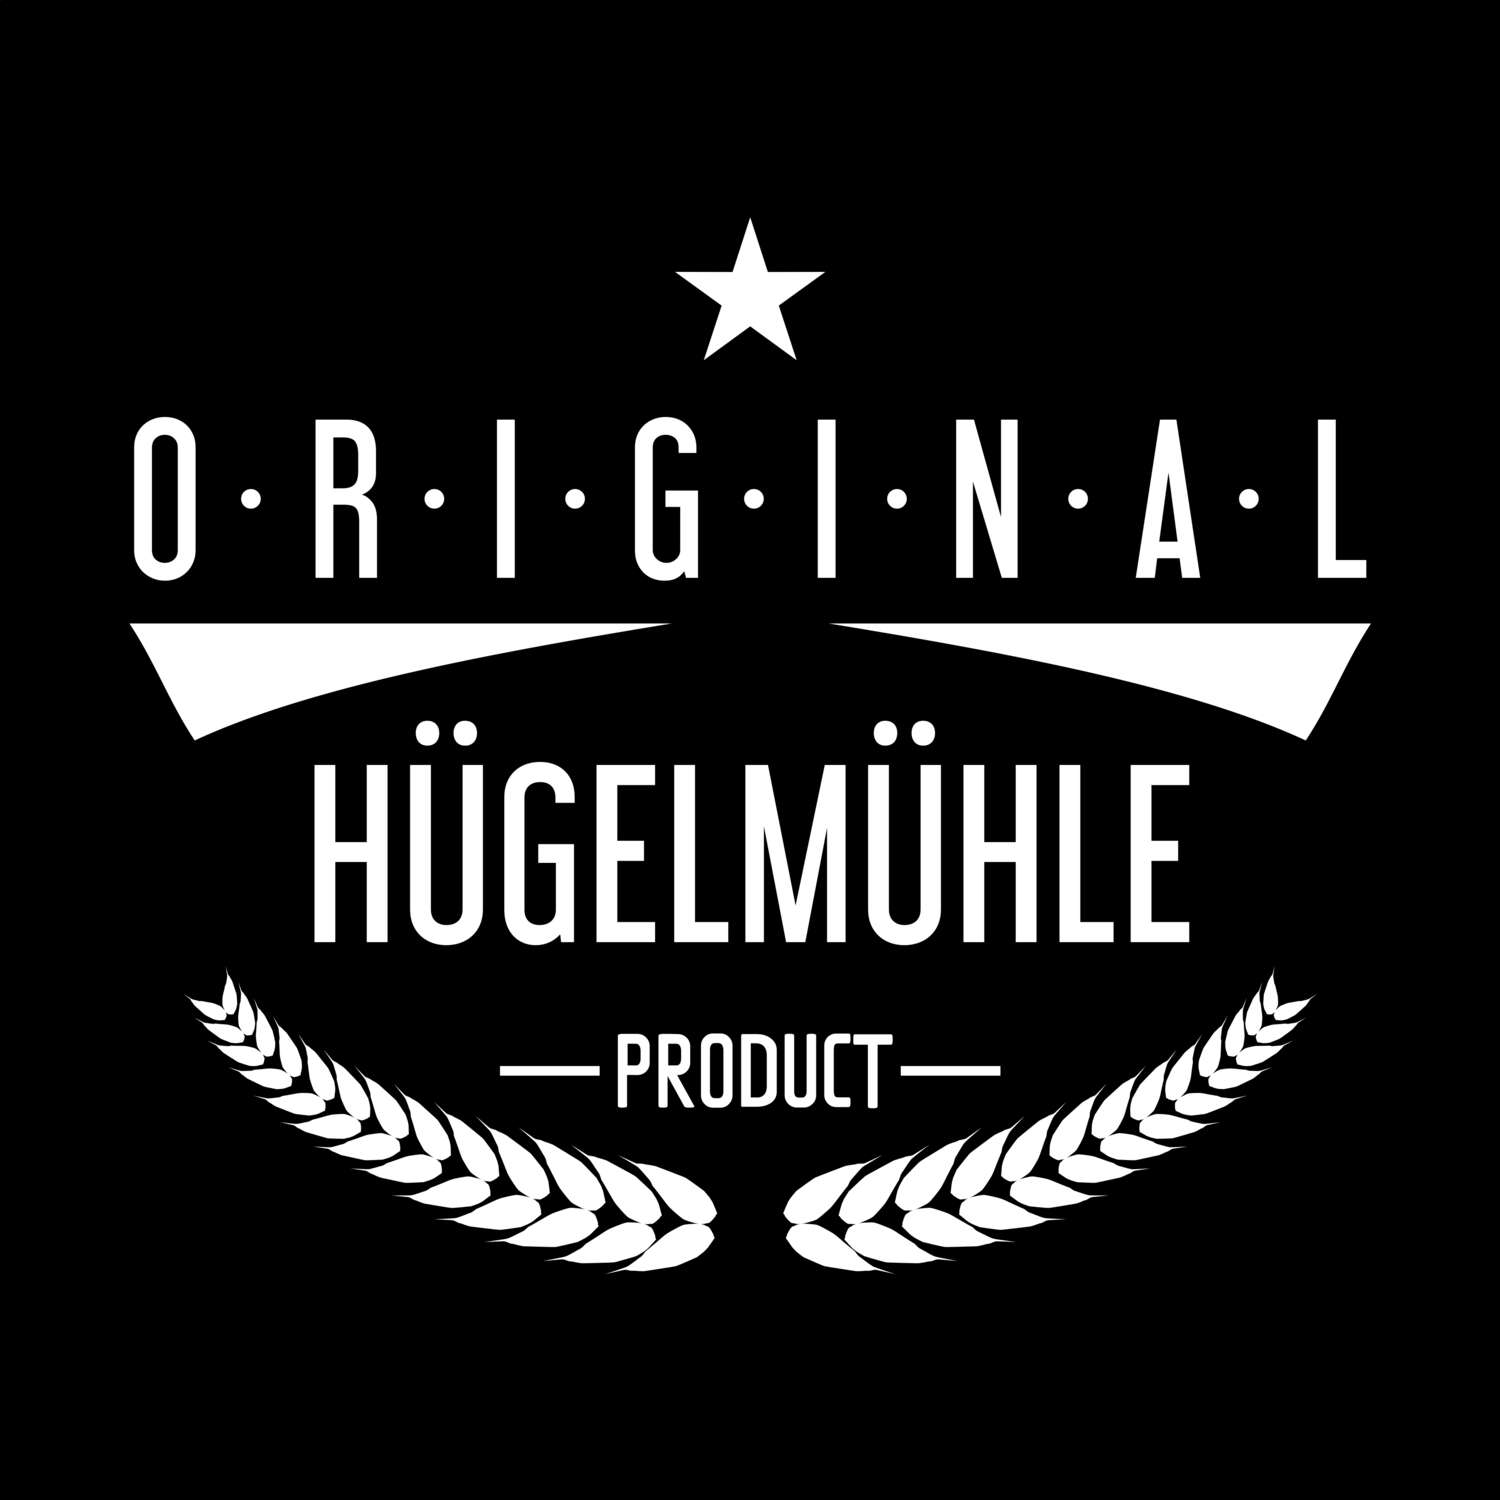 Hügelmühle T-Shirt »Original Product«